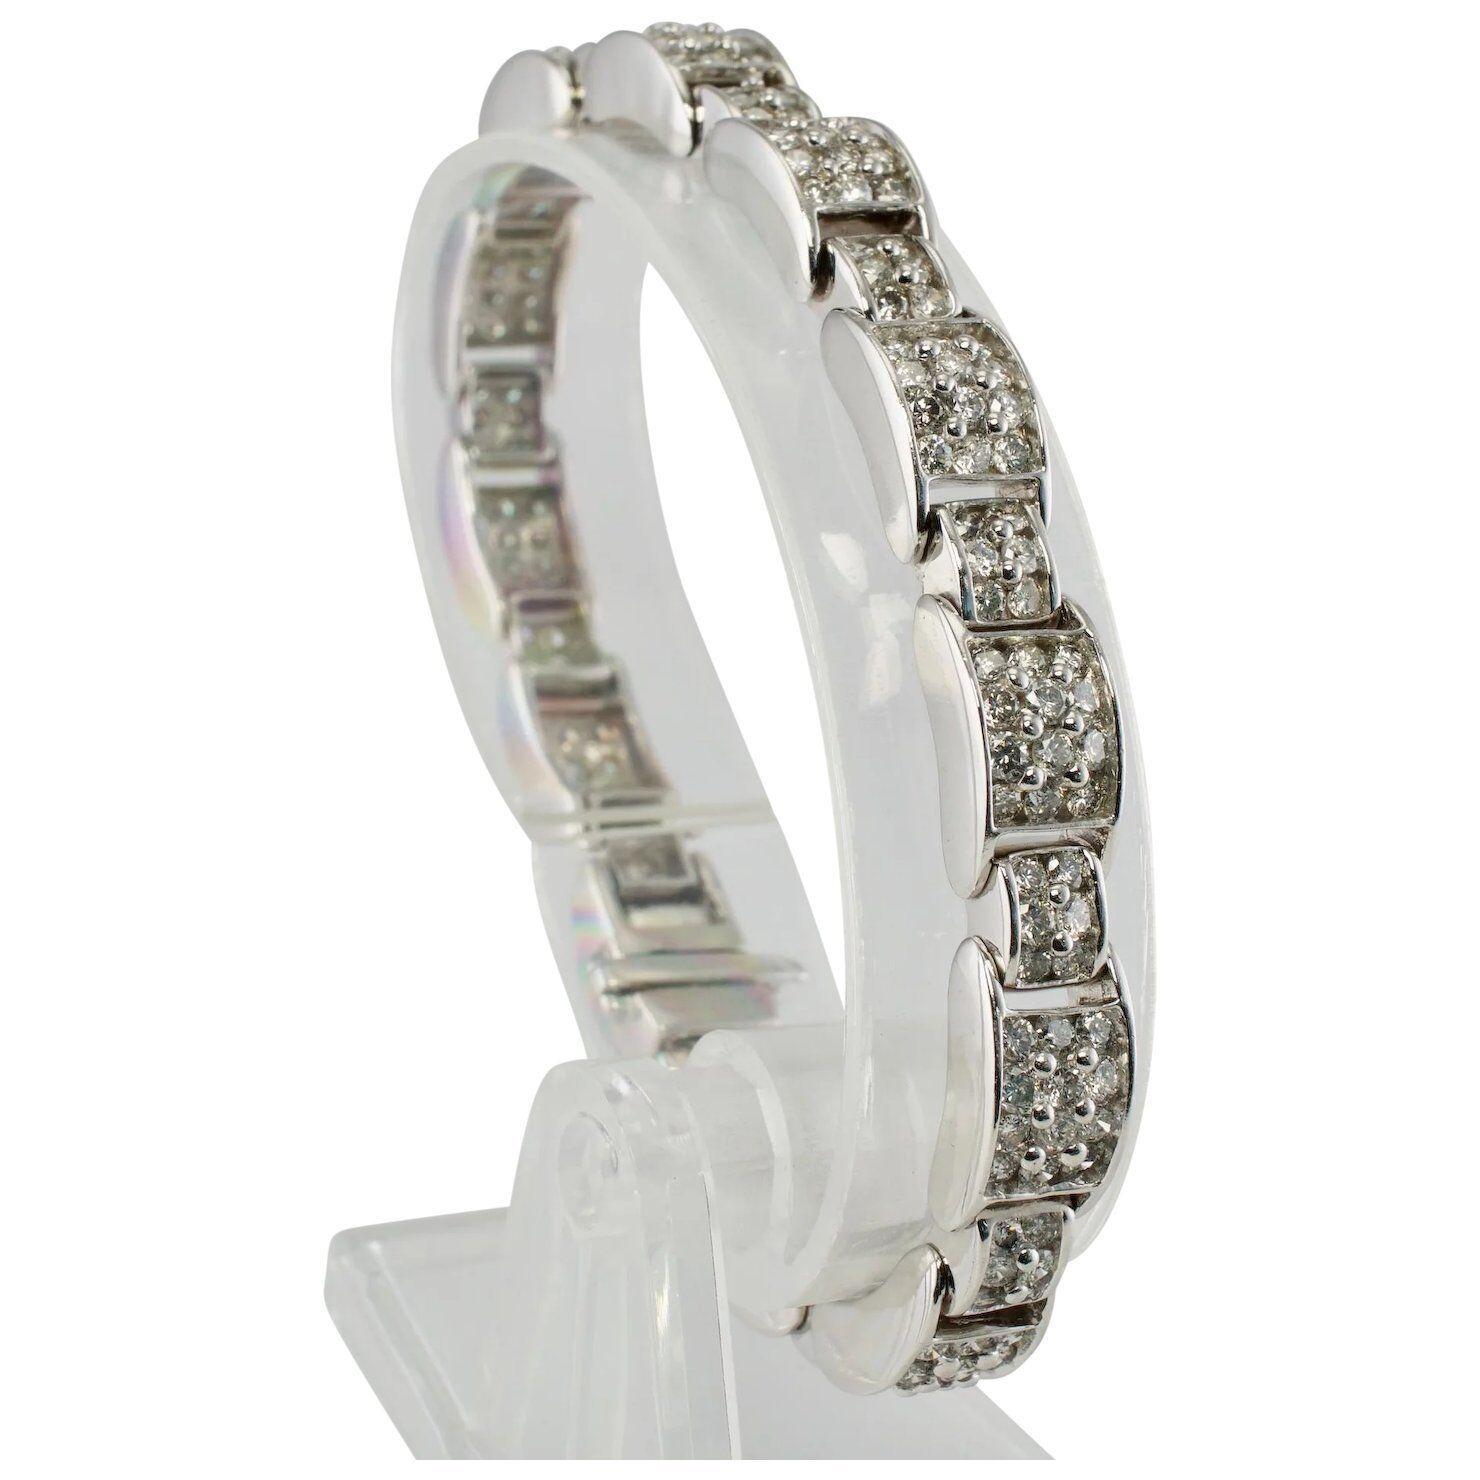 Ce magnifique bracelet étincelant est finement réalisé en or blanc 14 carats massif et serti de véritables diamants blancs et ardents. Il y a 216 diamants ronds de taille brillant de clarté SI2 et de couleur GH totalisant 6,50 carats. Le bracelet